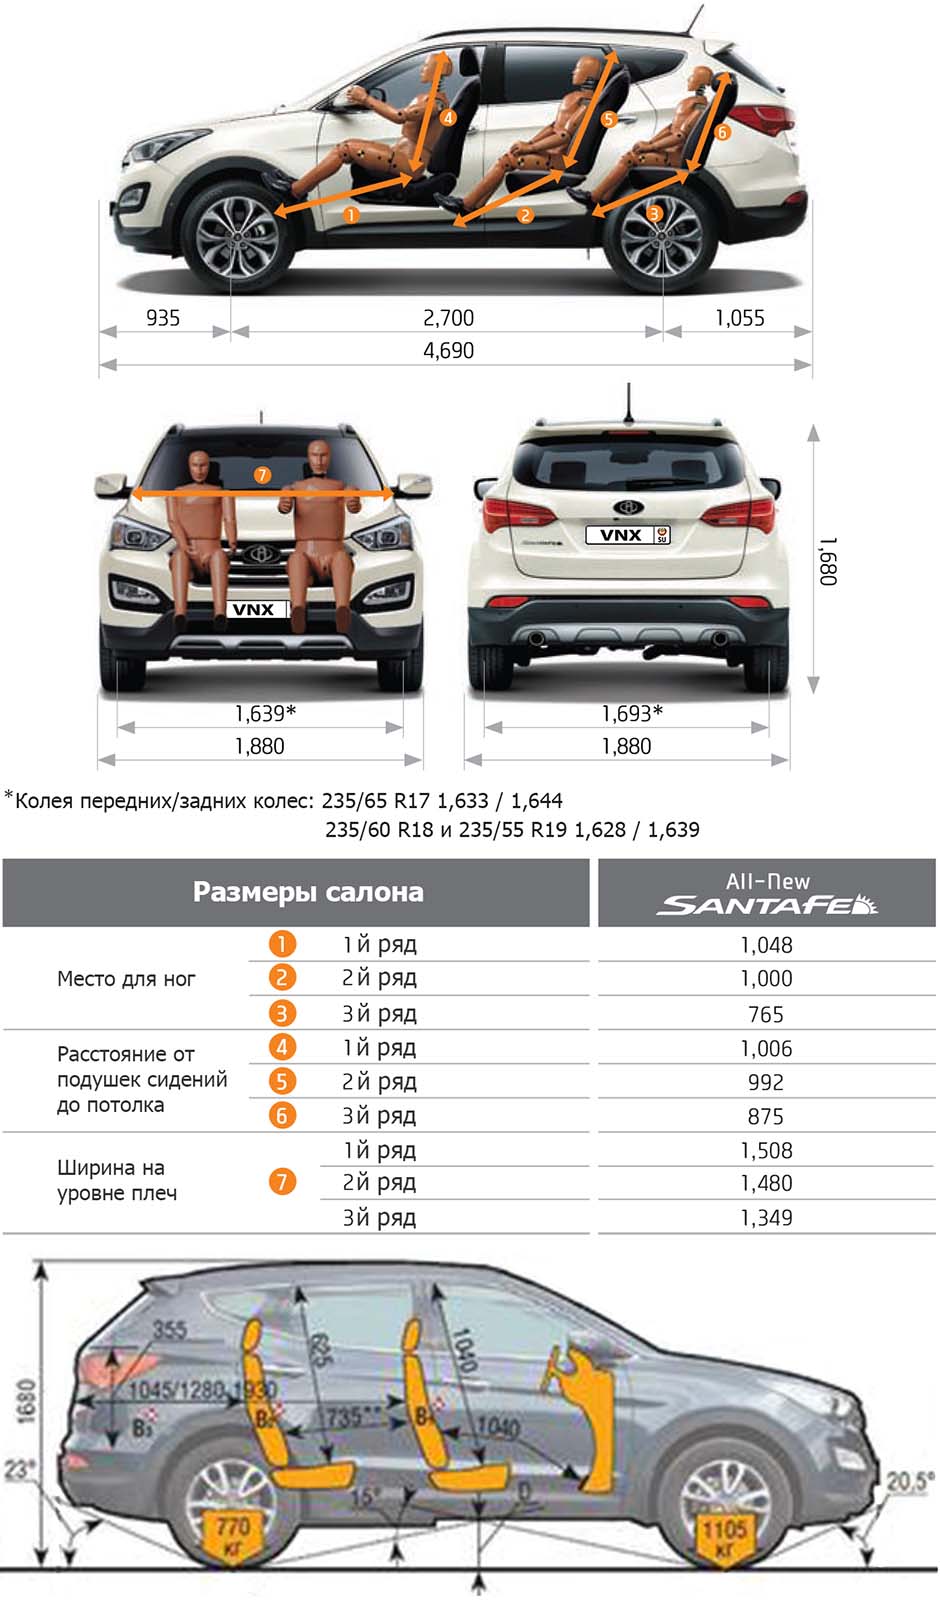 Габаритные размеры Хундай Санта Фе с 2012 (dimensions Hyundai Santa Fe DM)